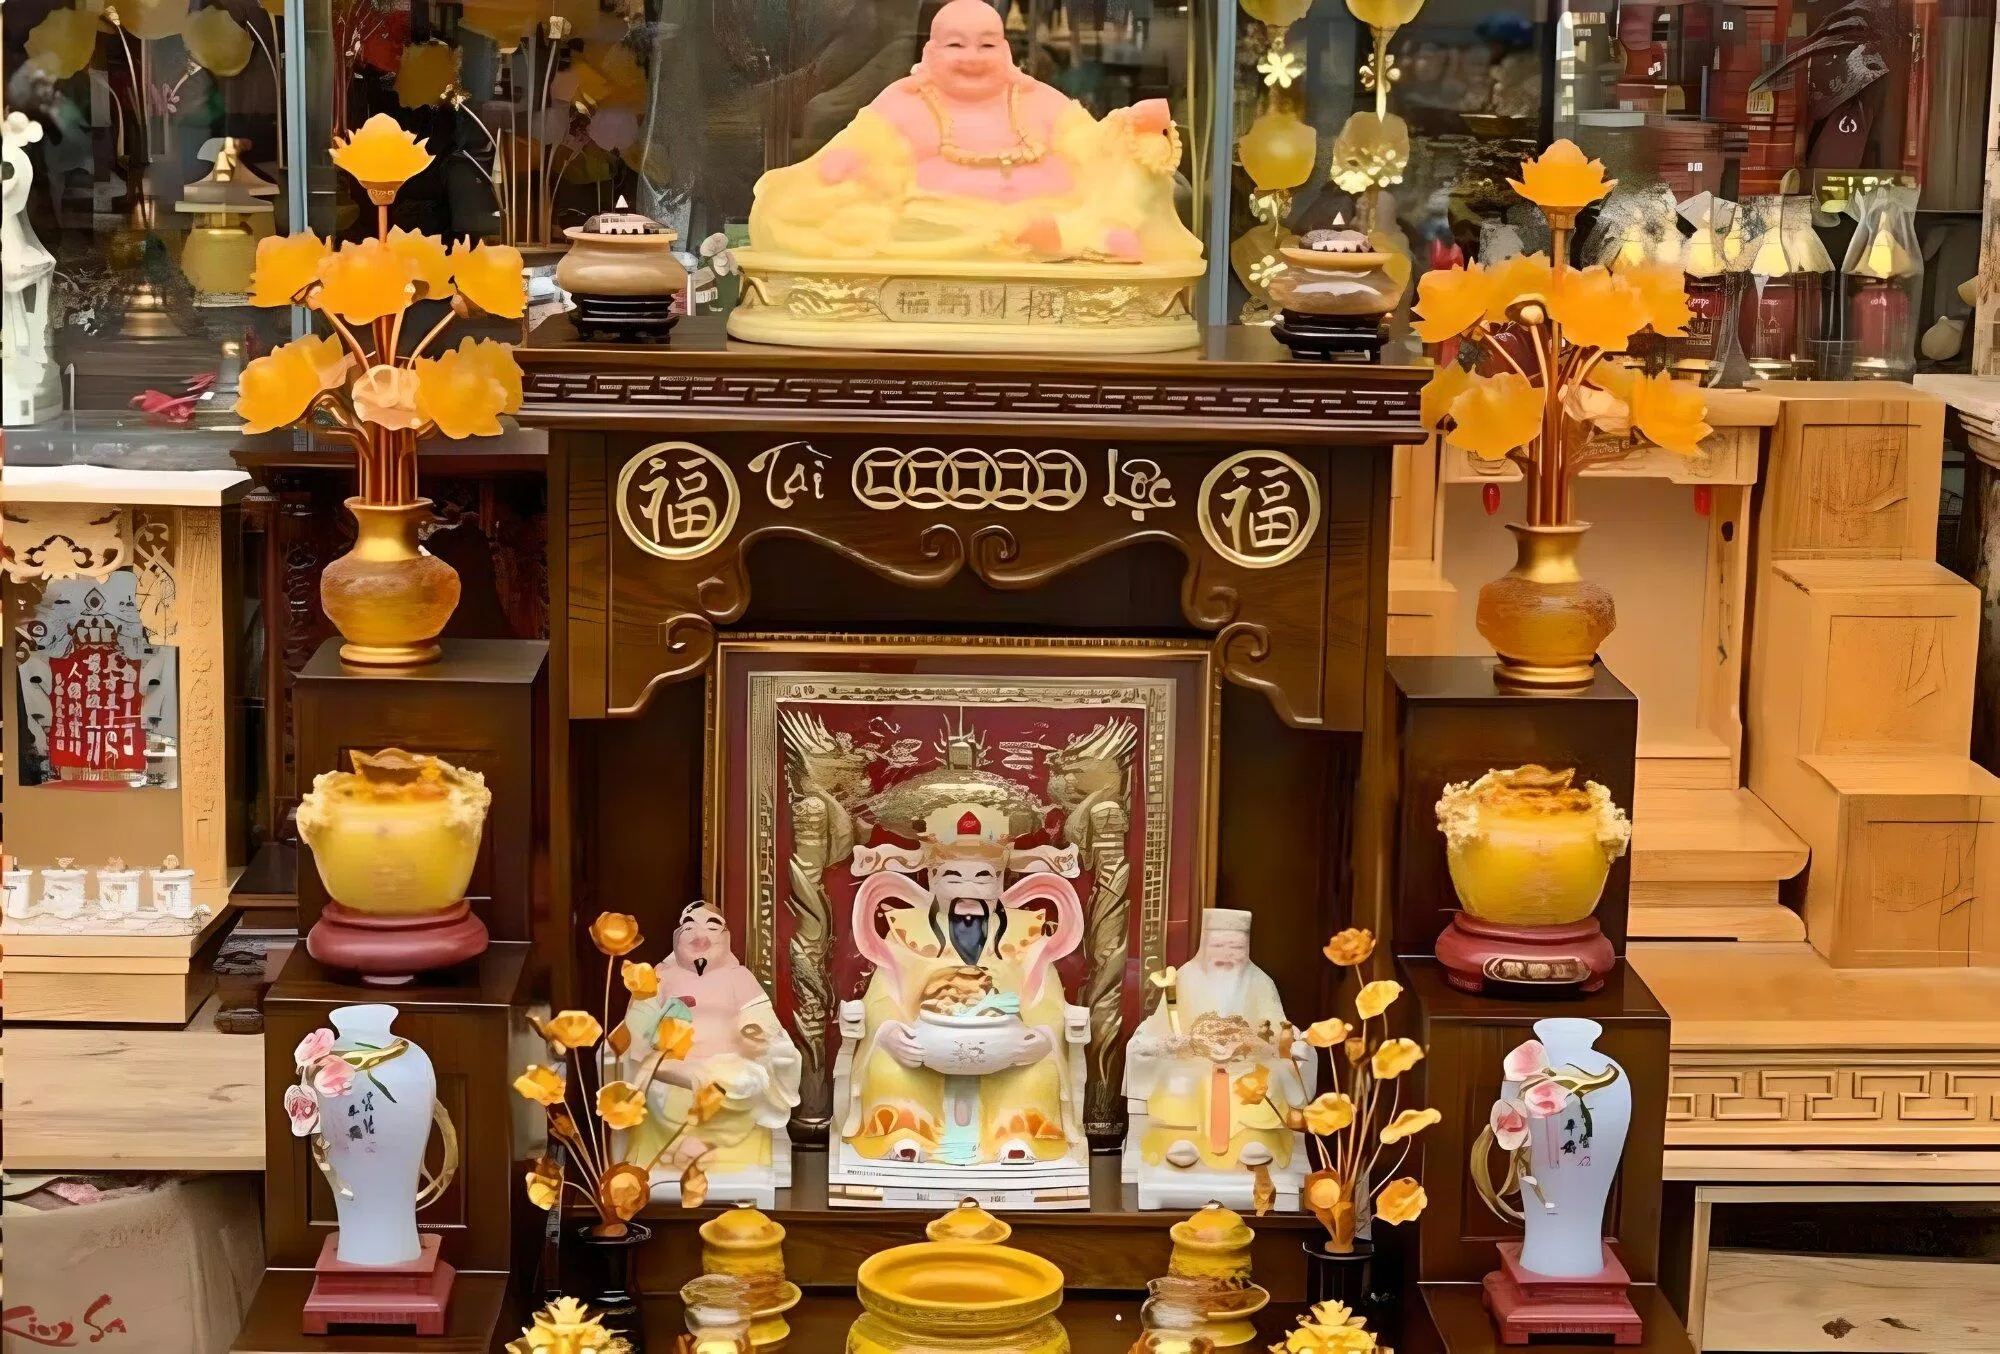 Ví dụ mẫu đặt và bài trí bàn thờ Phật theo phong thủy (ảnh: Internet)